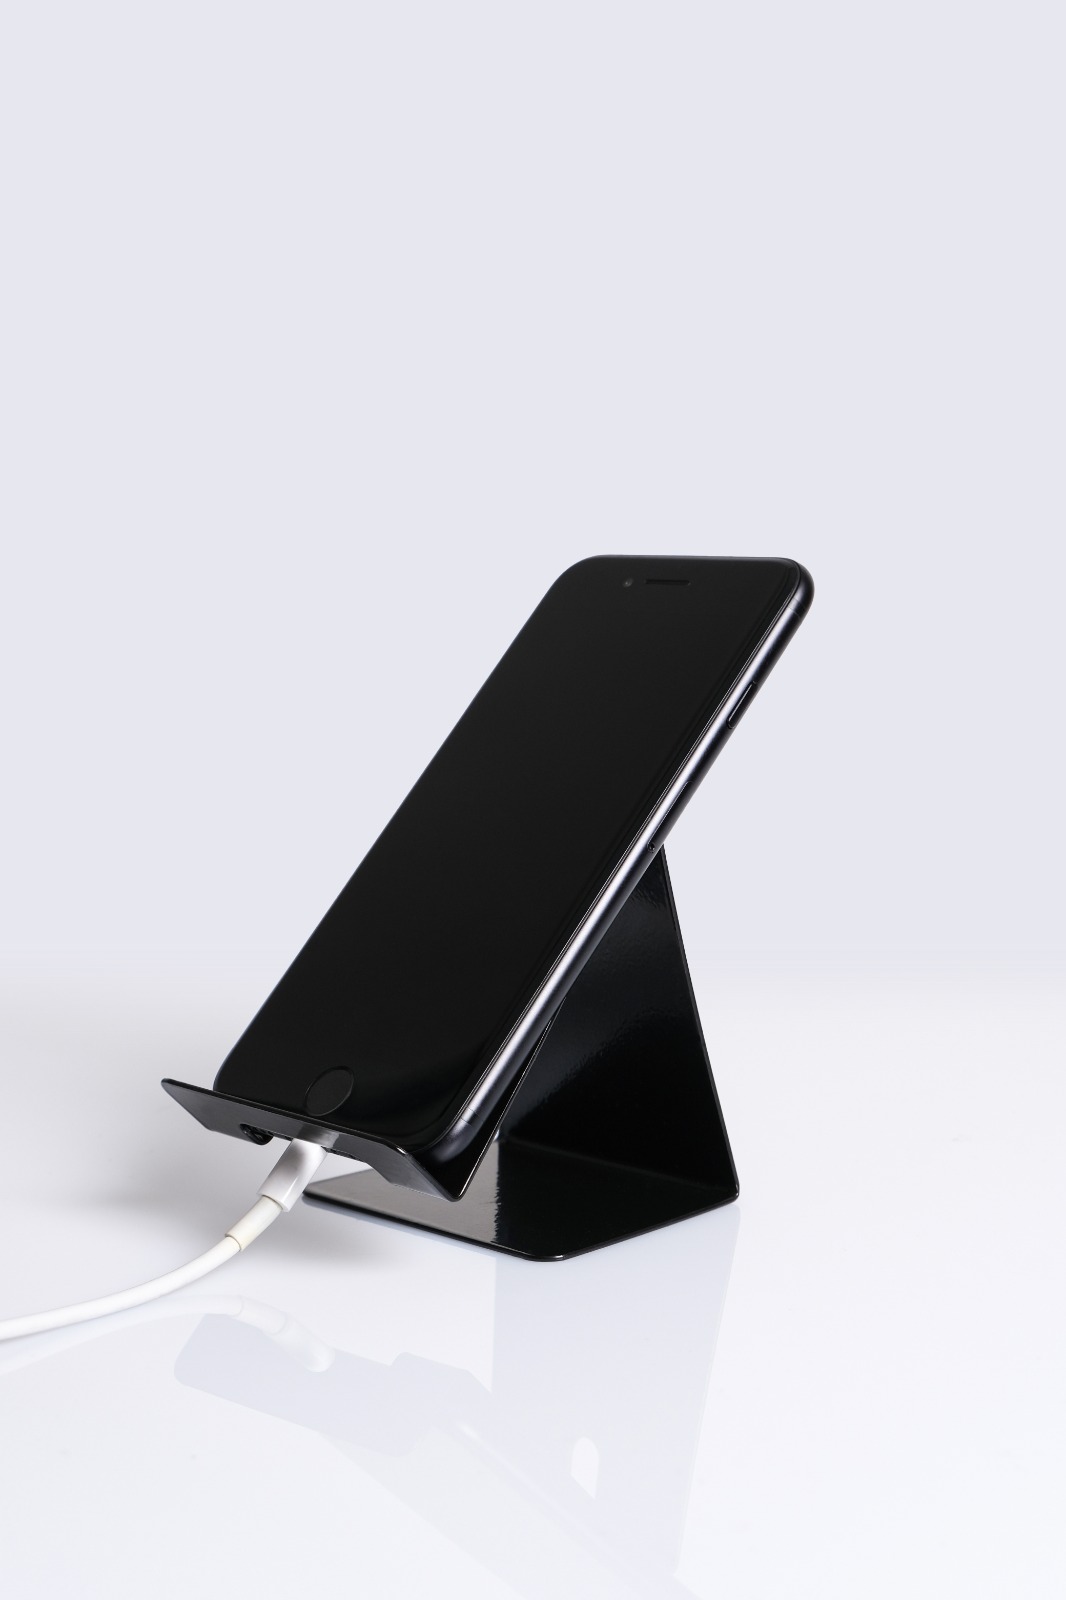 Siyah Metal Telefon Tutucu, Şarj Bölmeli Masaüstü Telefon Tutacağı 